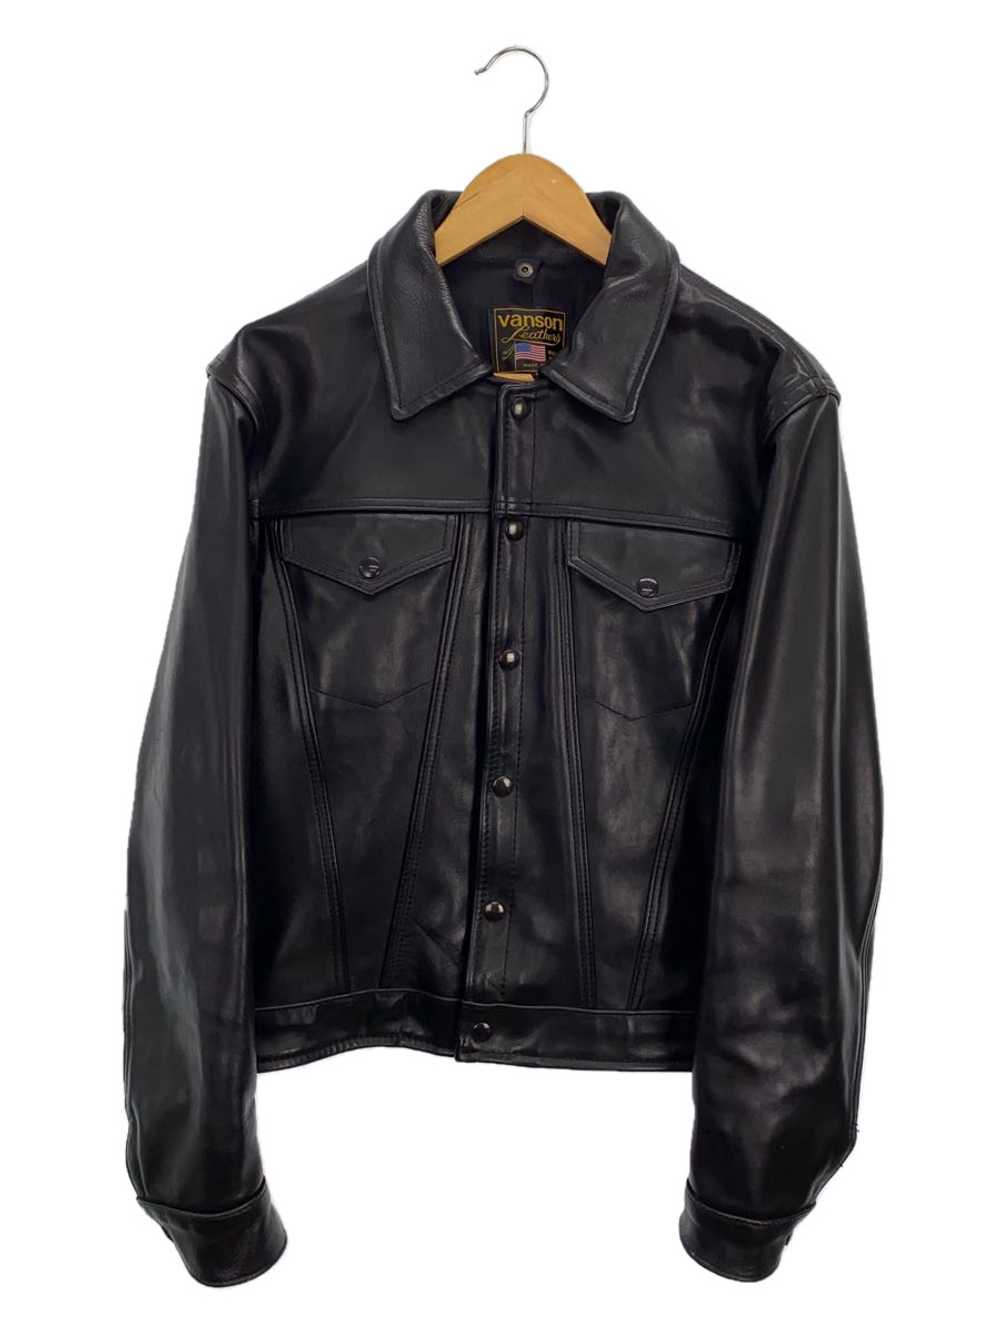 Men's Vanson Djcb2 Leather Jacket Blouson/38/Leat… - image 1